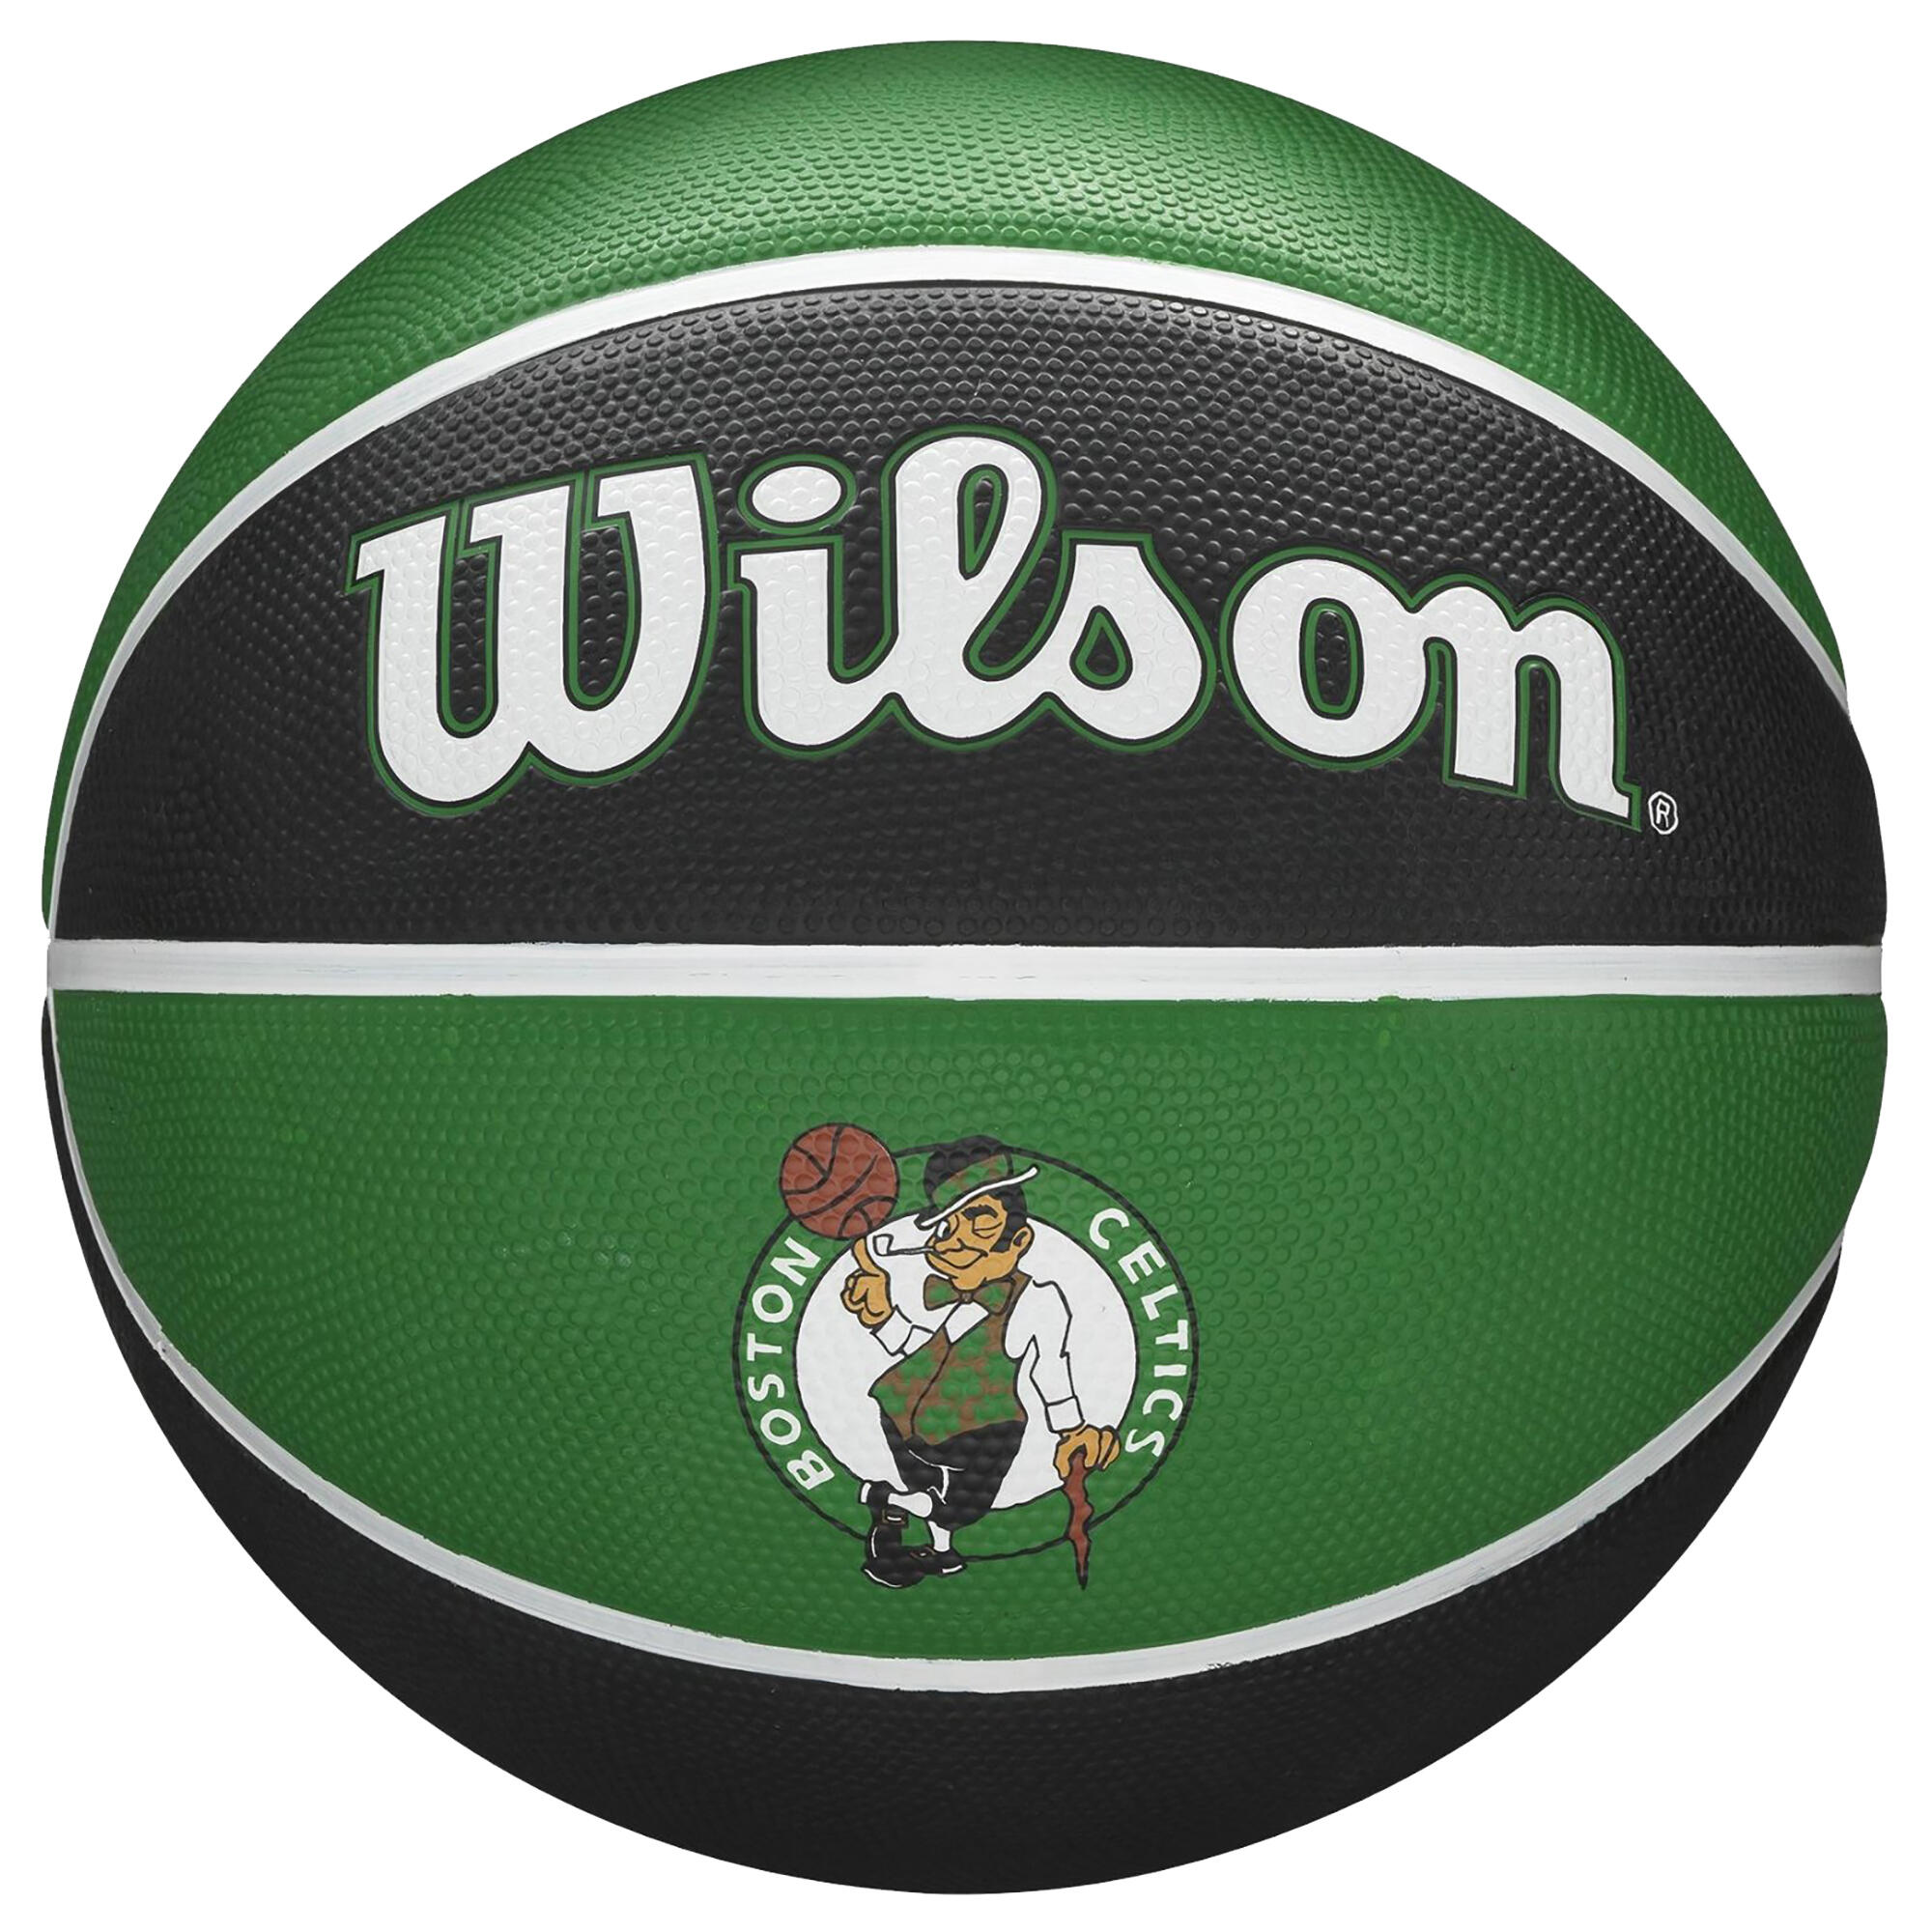 Minge Baschet Replică Team Tribute Celtics NBA Mărimea 7 baschet  Mingi de baschet